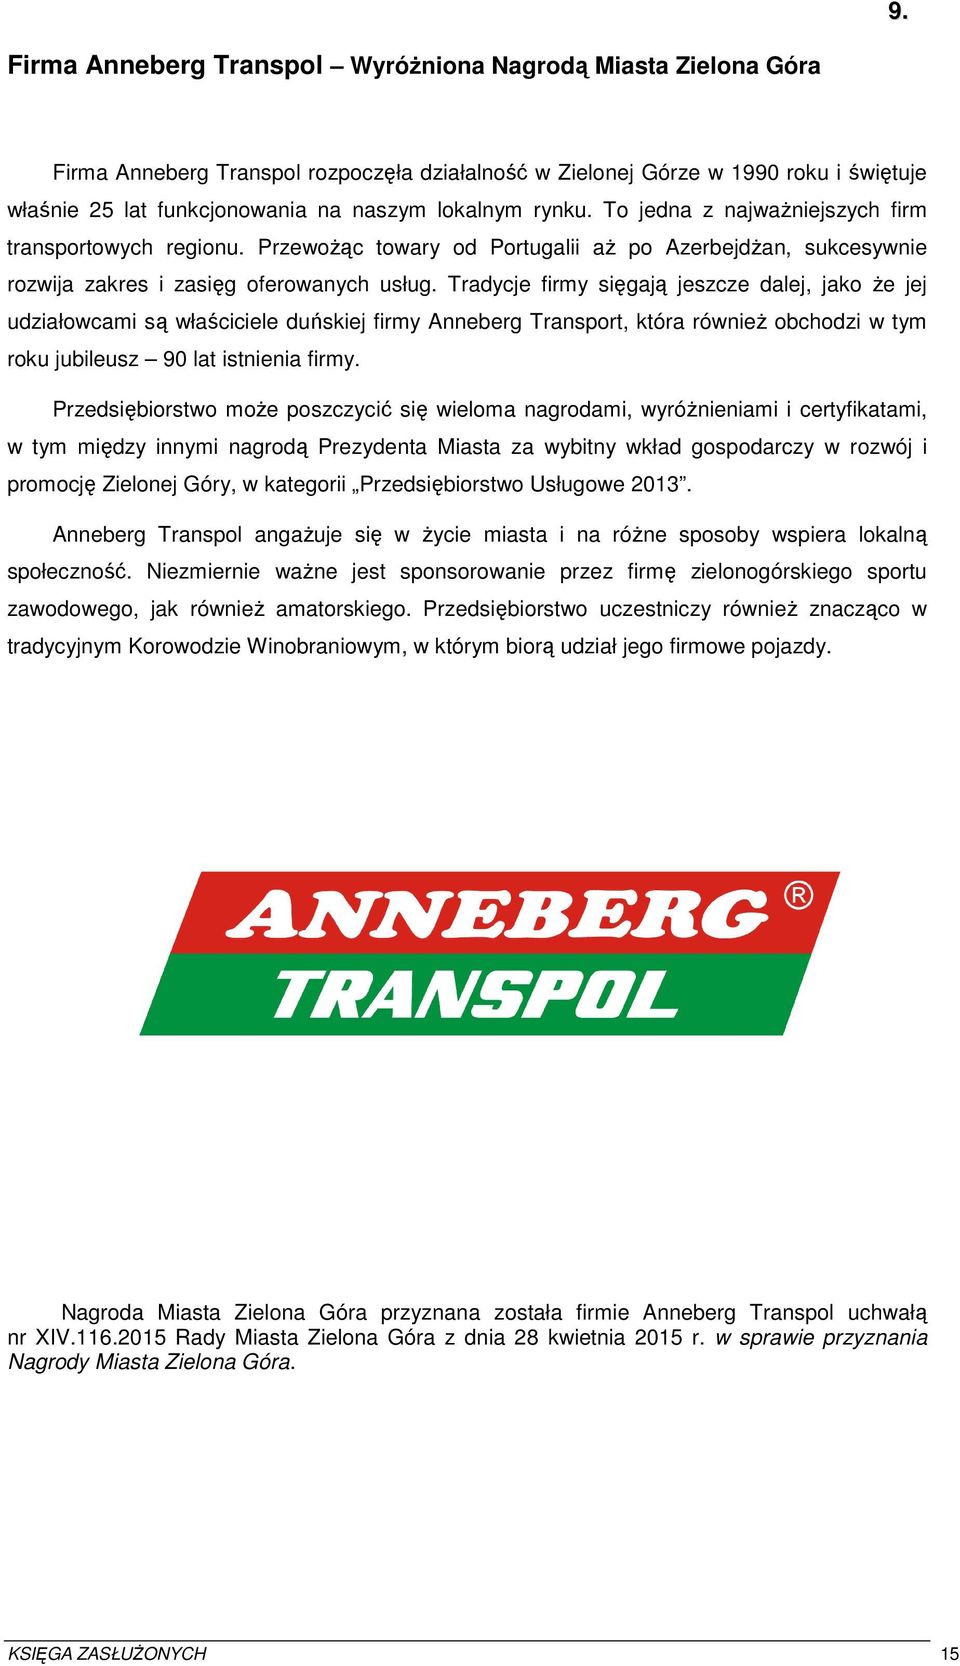 Tradycje firmy sięgają jeszcze dalej, jako że jej udziałowcami są właściciele duńskiej firmy Anneberg Transport, która również obchodzi w tym roku jubileusz 90 lat istnienia firmy.